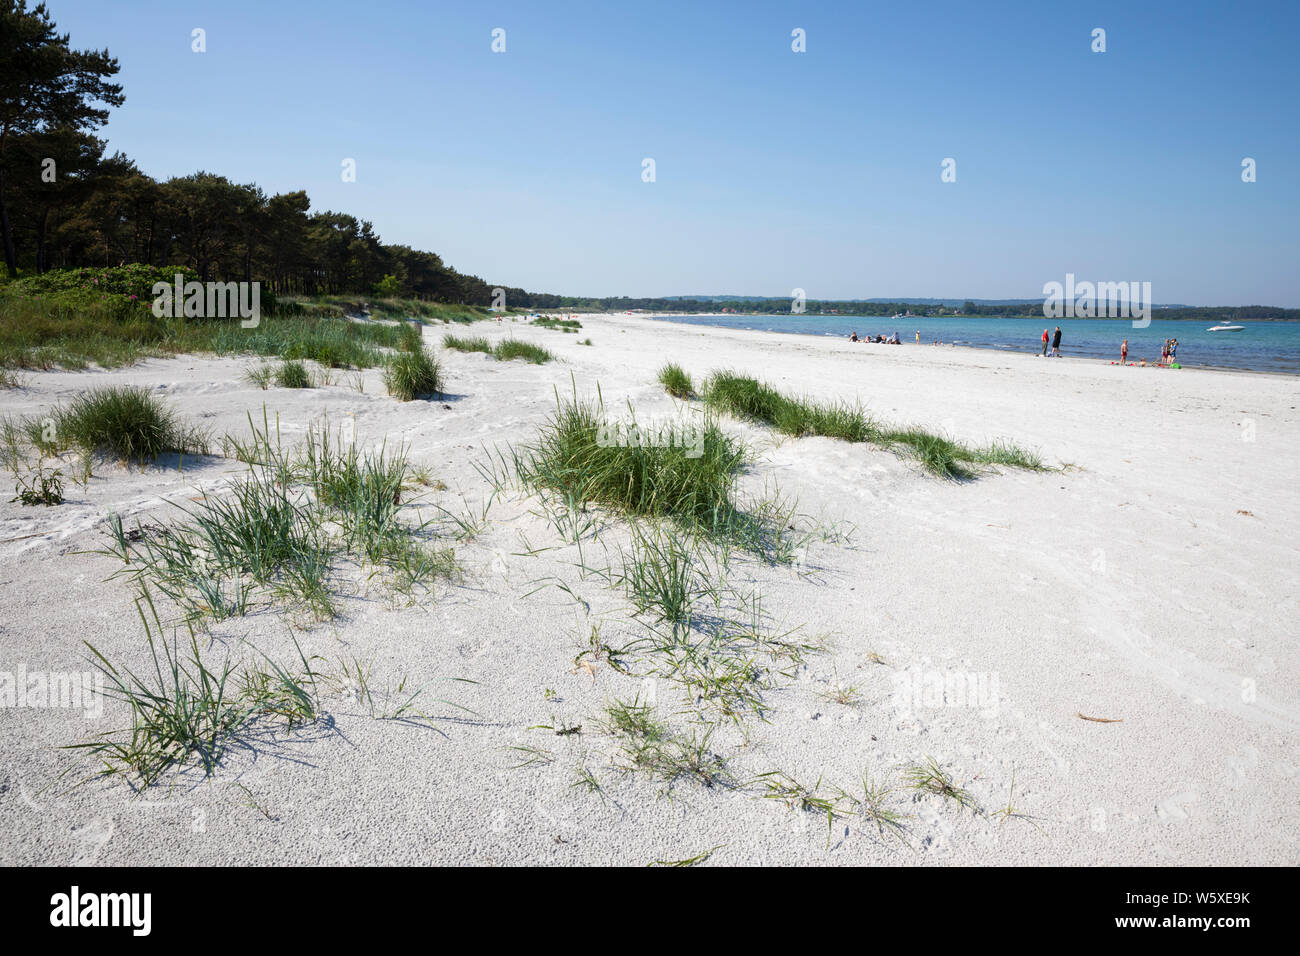 Le sable blanc et les dunes de Balka strand sur la côte sud de l'île, Balka, île de Bornholm, mer Baltique, Danemark, Europe Banque D'Images